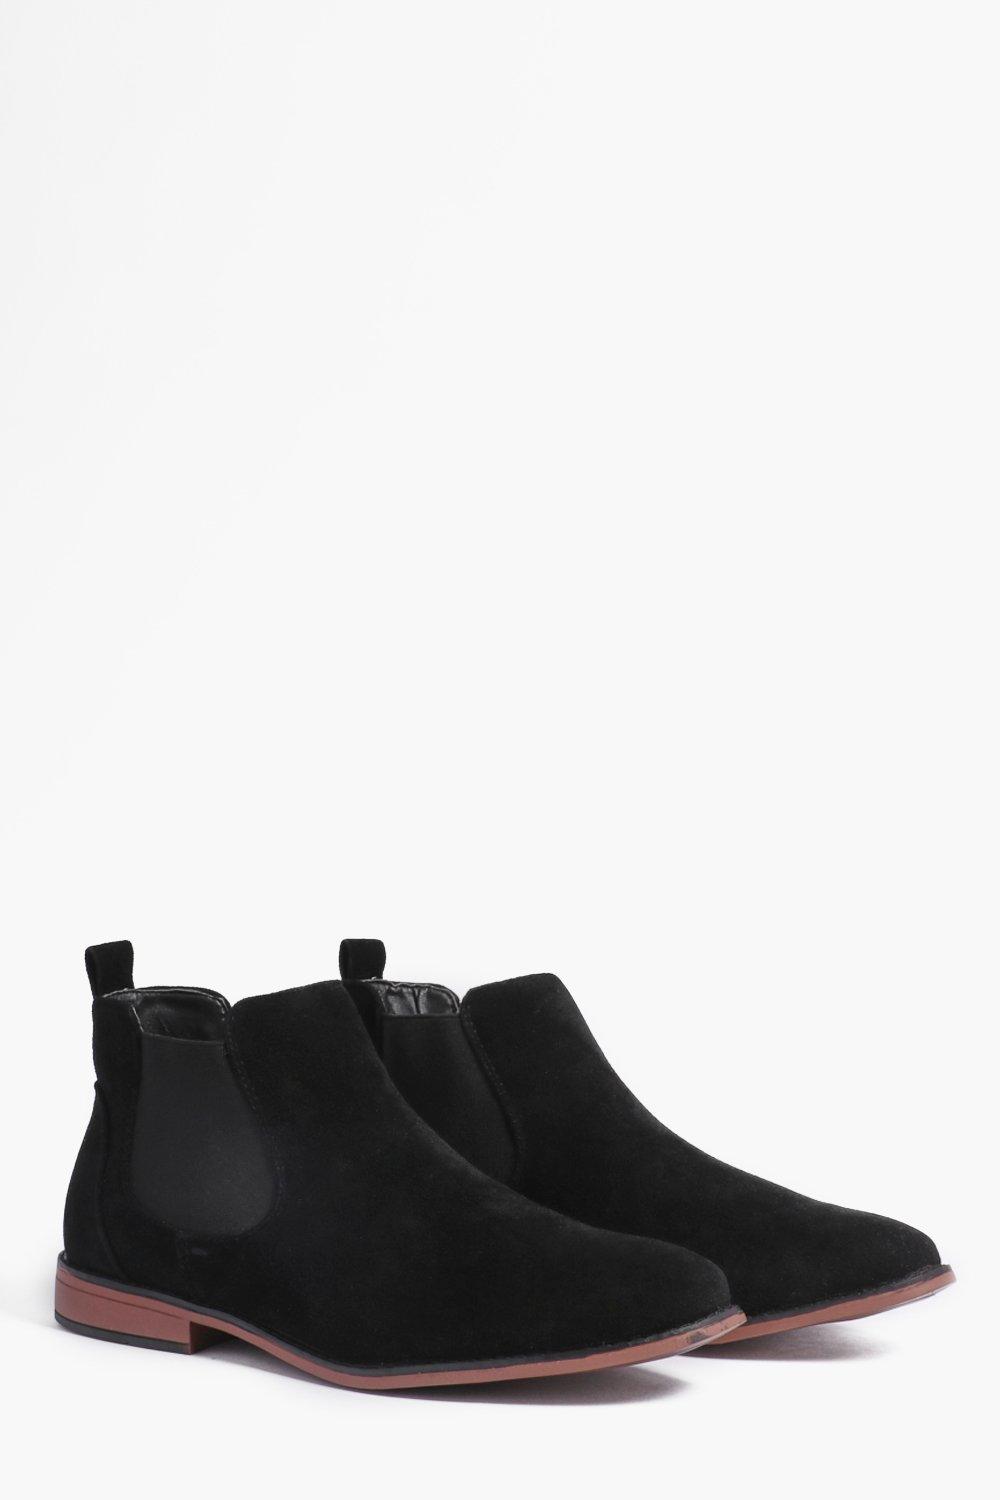 black faux suede chelsea boots